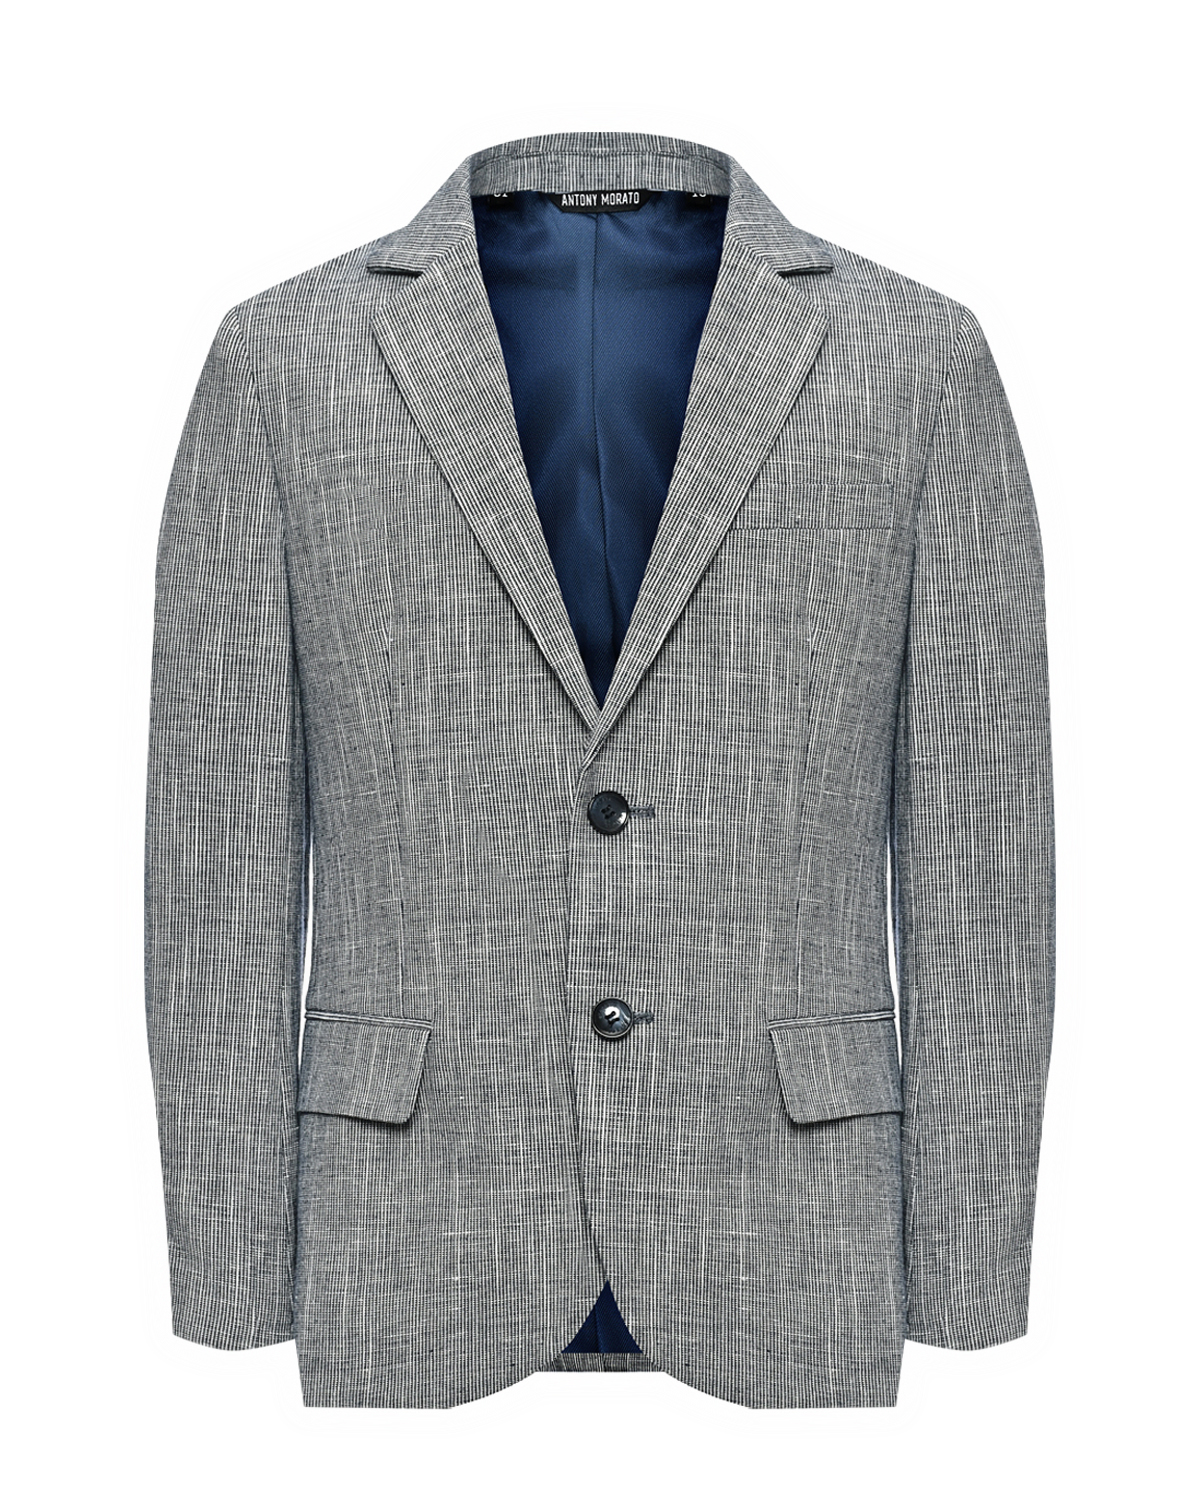 Пиджак однобортный серый, текстурная ткань Antony Morato пиджак однобортный текстурная ткань antony morato